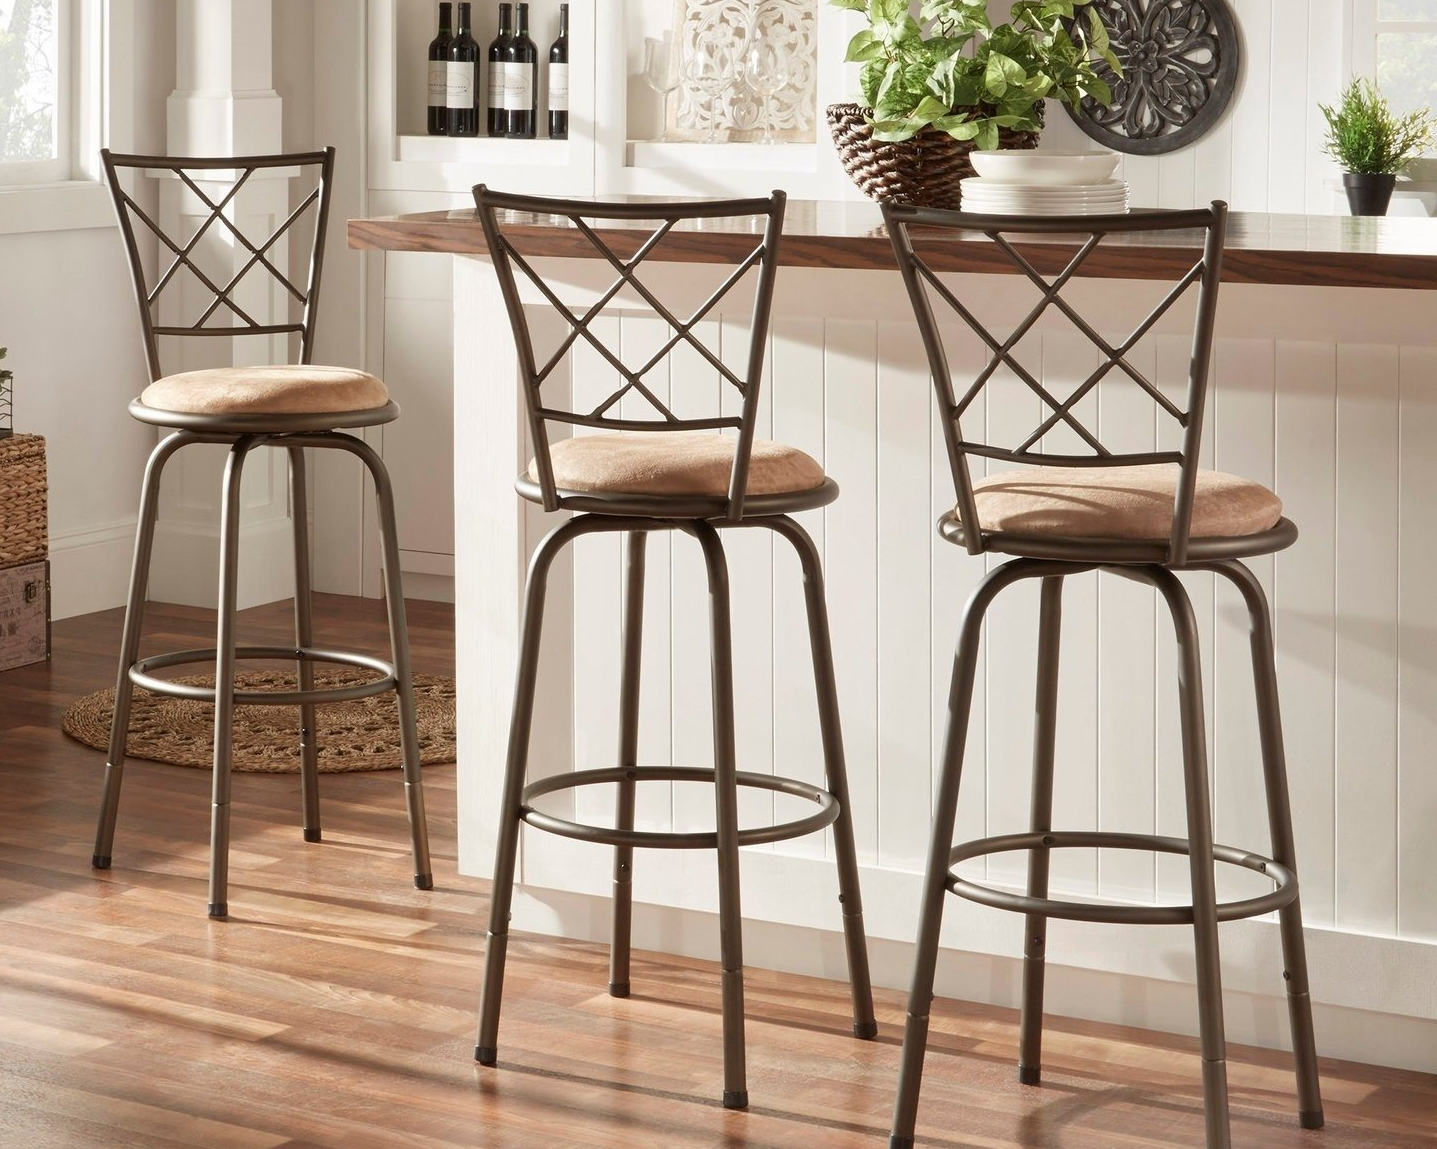 Как выбрать барные стулья на кухню — справка для покупателя